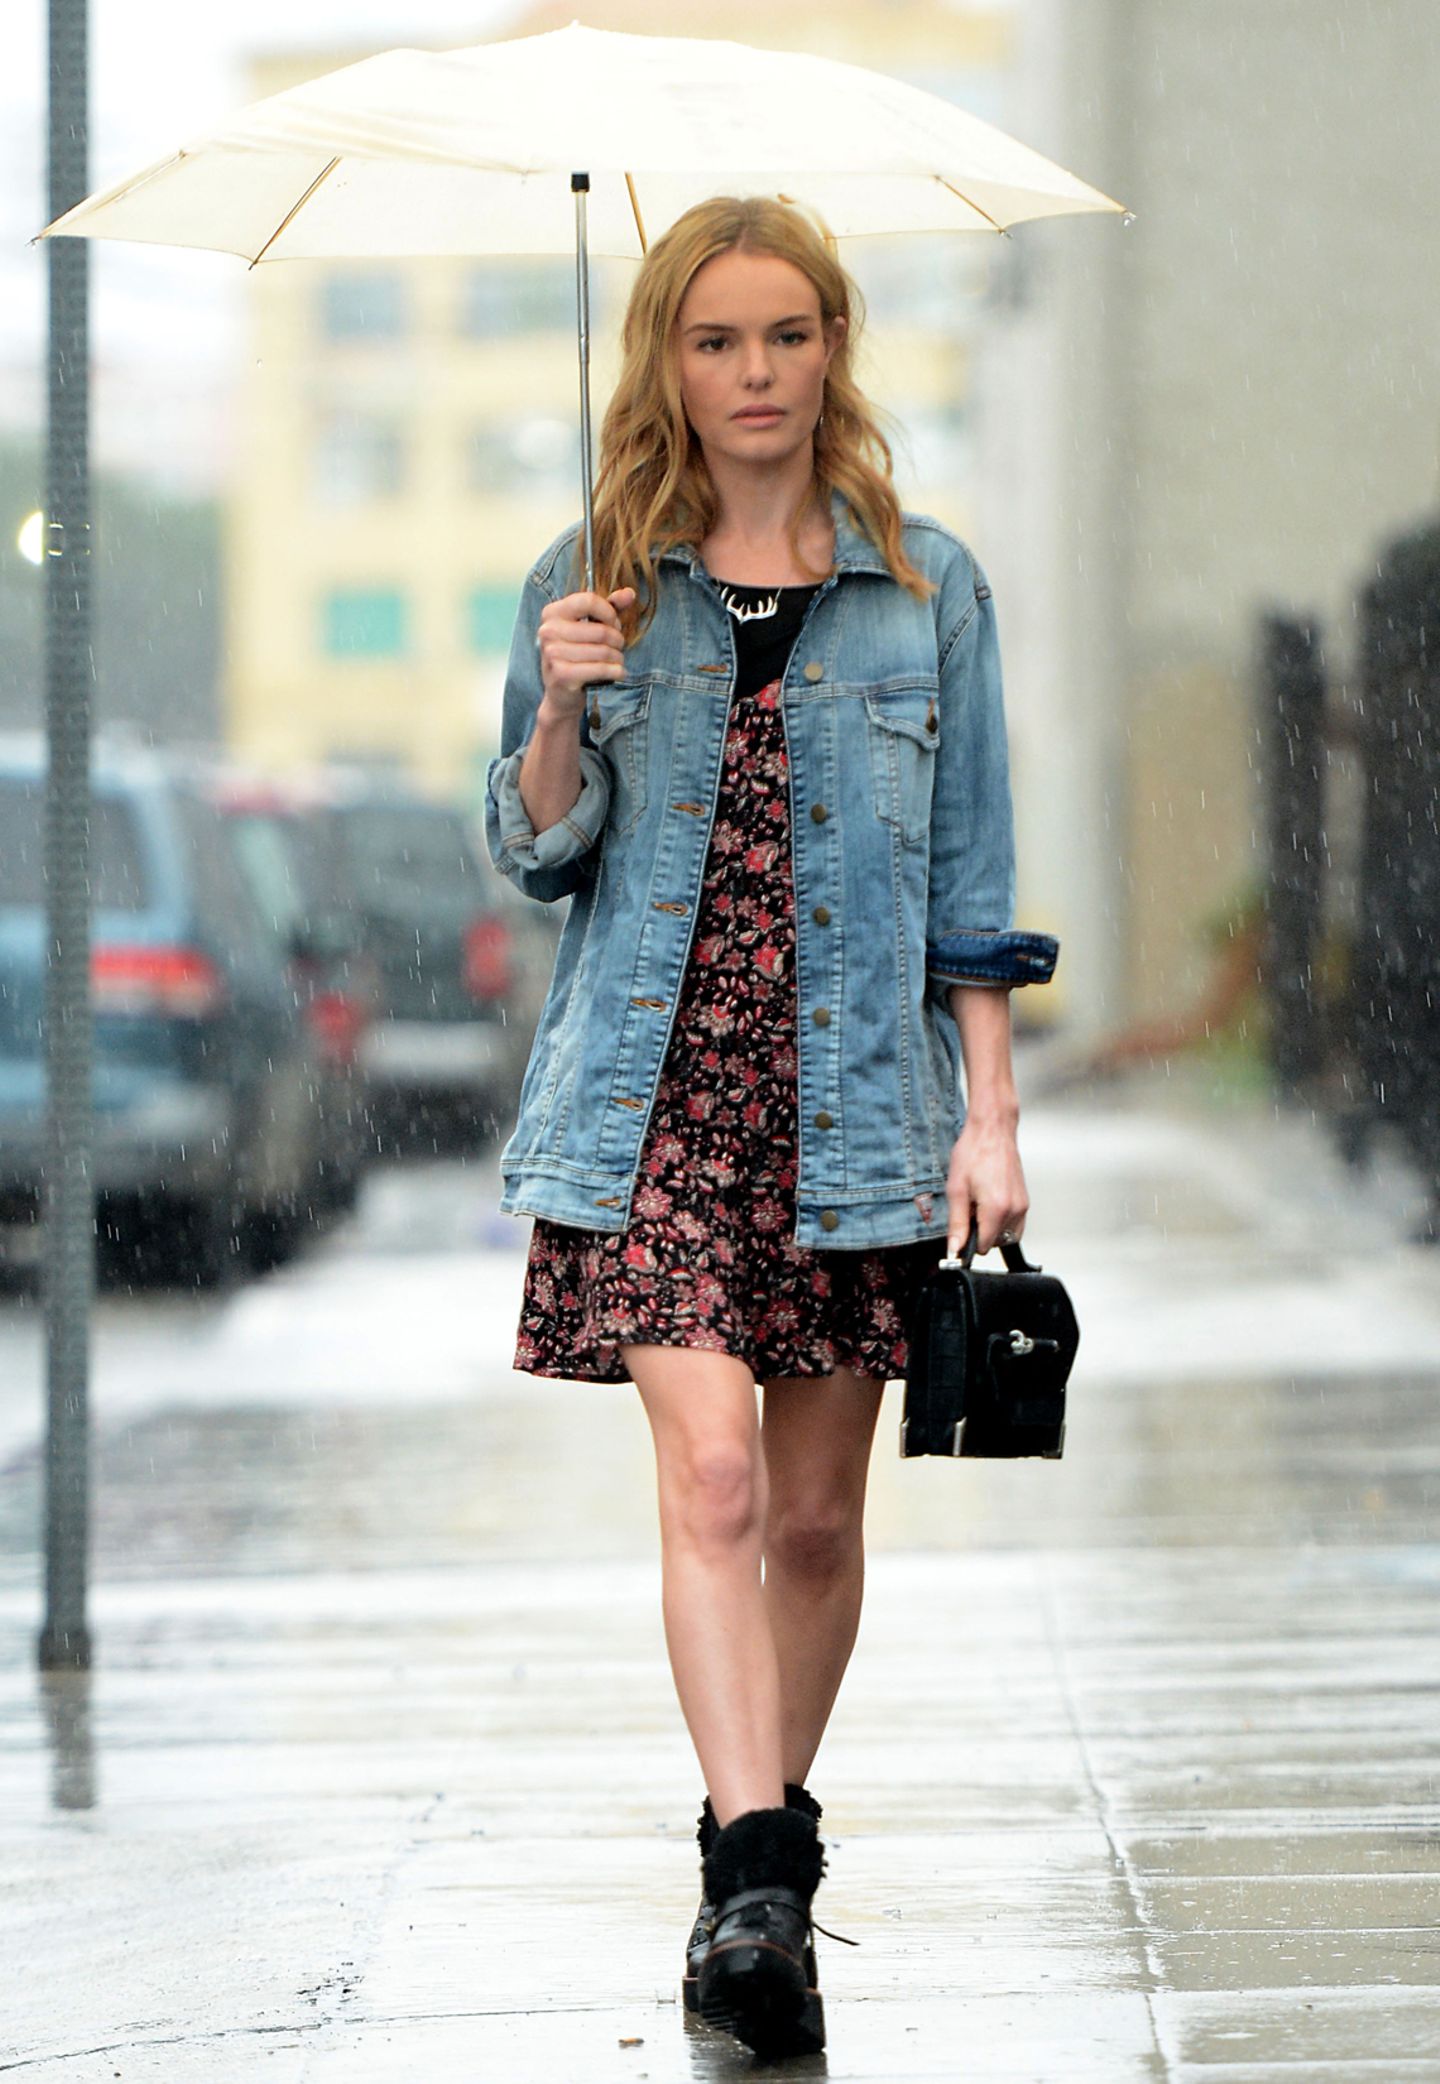 Kate Bosworth trotzt dem kalifornischen Regen nicht nur mit einem schlichten Regenschirm. Auch bei dem schlechten Wetter trägt sie ein sommerliches Kleid mit Blumen-Print. Einen coolen Touch erzielt sie durch eine Boyfriend-Jenasjacke und derben Boots.